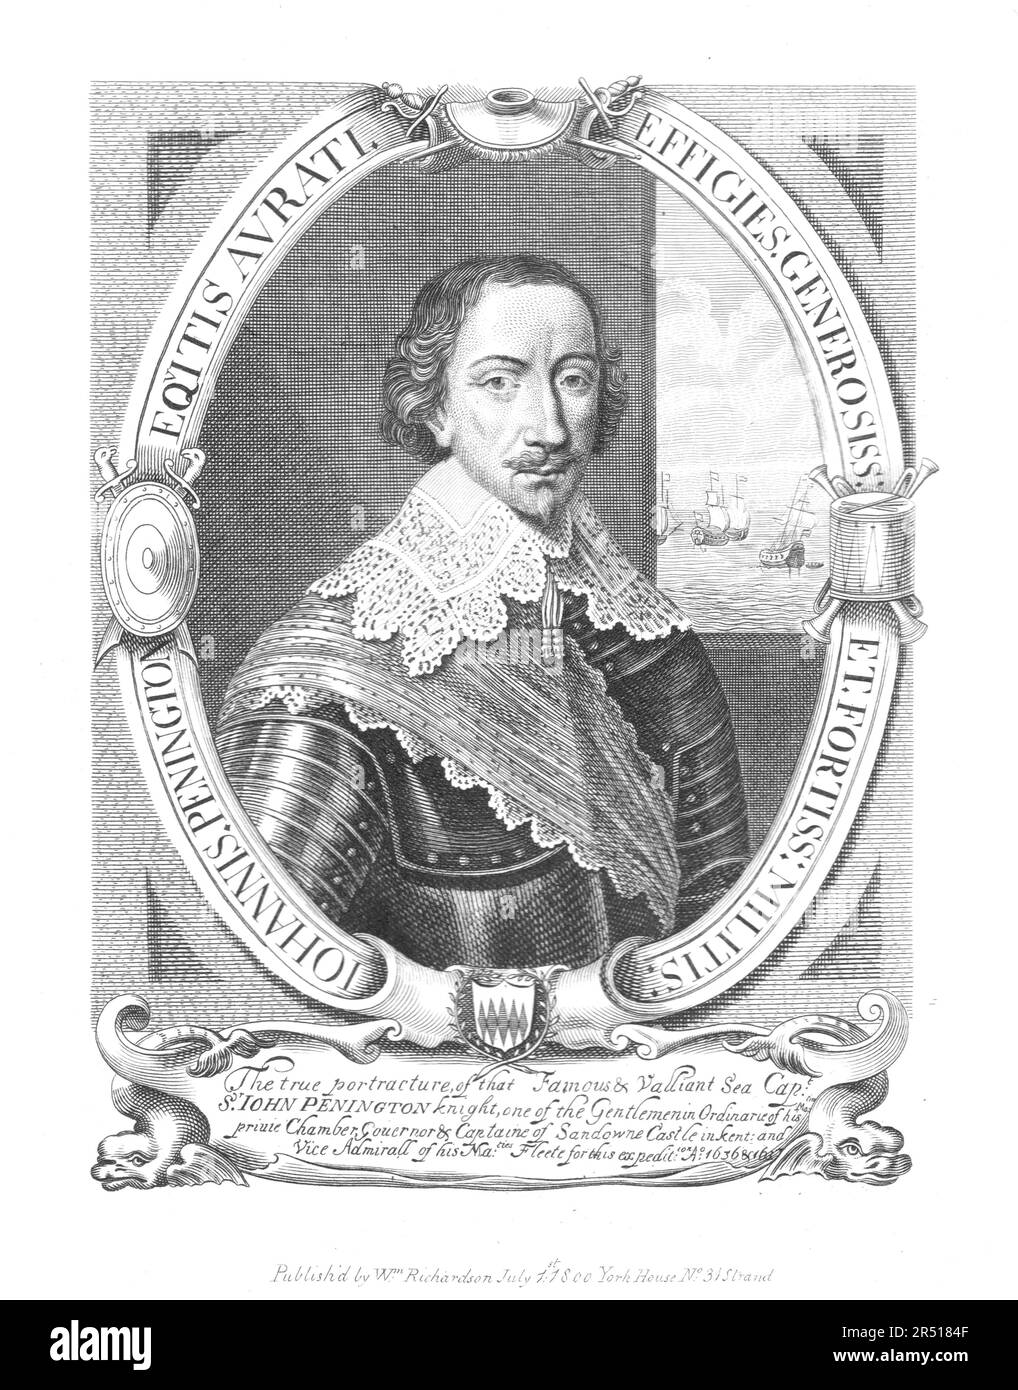 John Pennington (1584-1646) - publié par William Richardson vers 1800 Banque D'Images